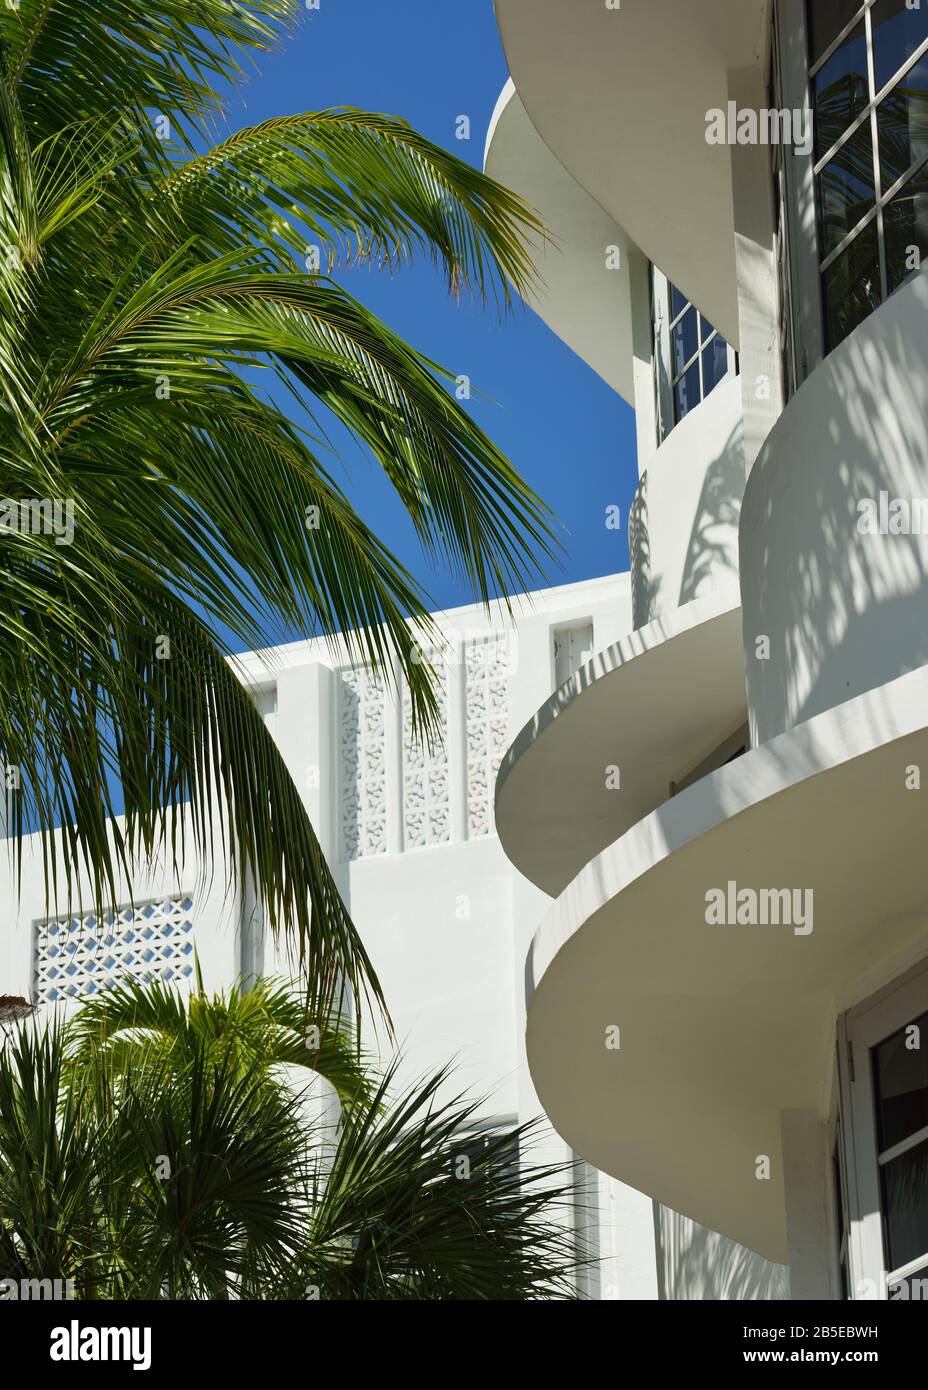 Architektonische Details von Betonplatten an Art-Deco-Gebäuden von South Beach, Miami, Florida. Wellenmottifs, Palmen, tropische Vibes, Bogen der 1930er Jahre Stockfoto